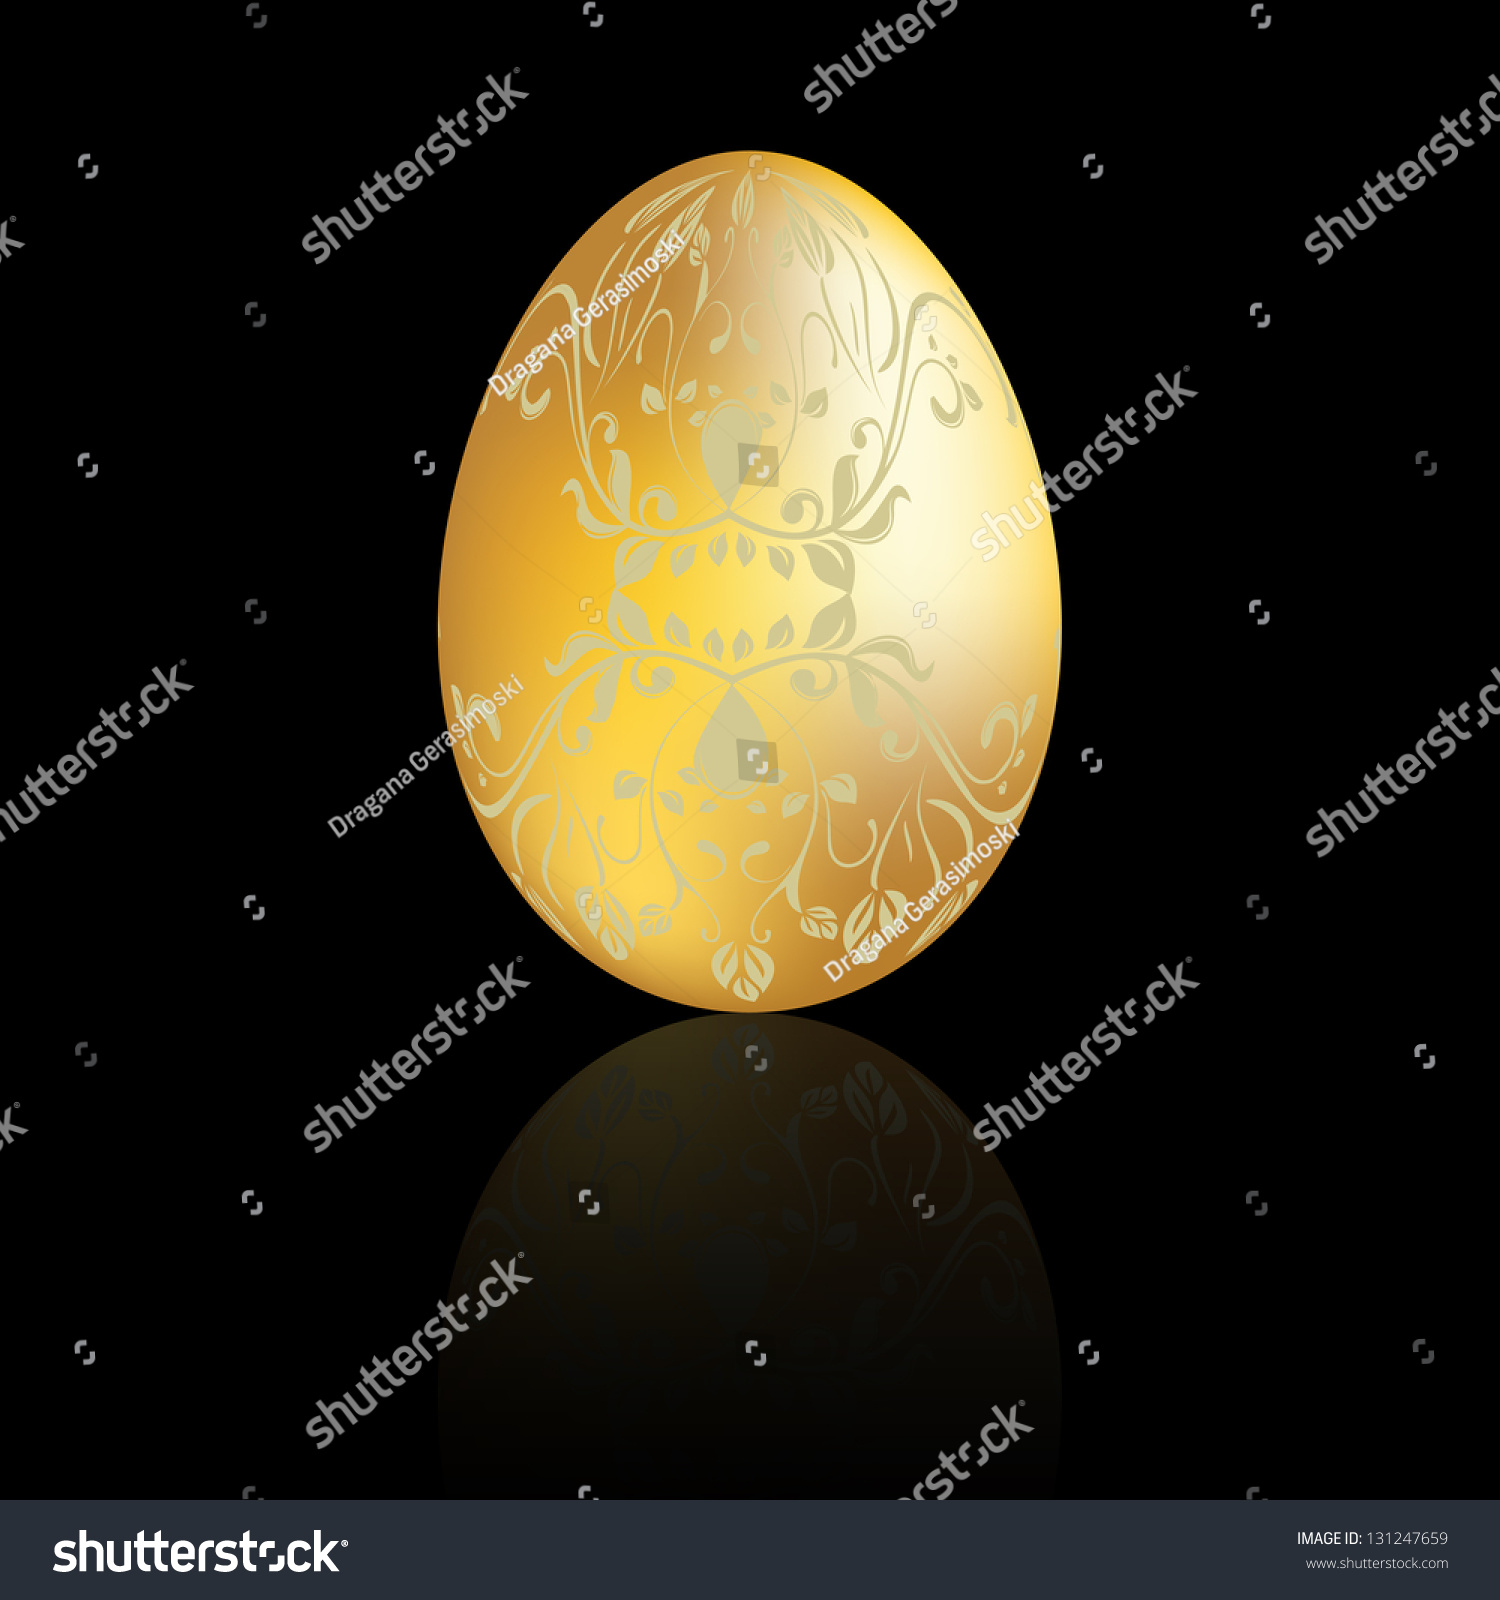 Golden Easter egg with swirl #131247659